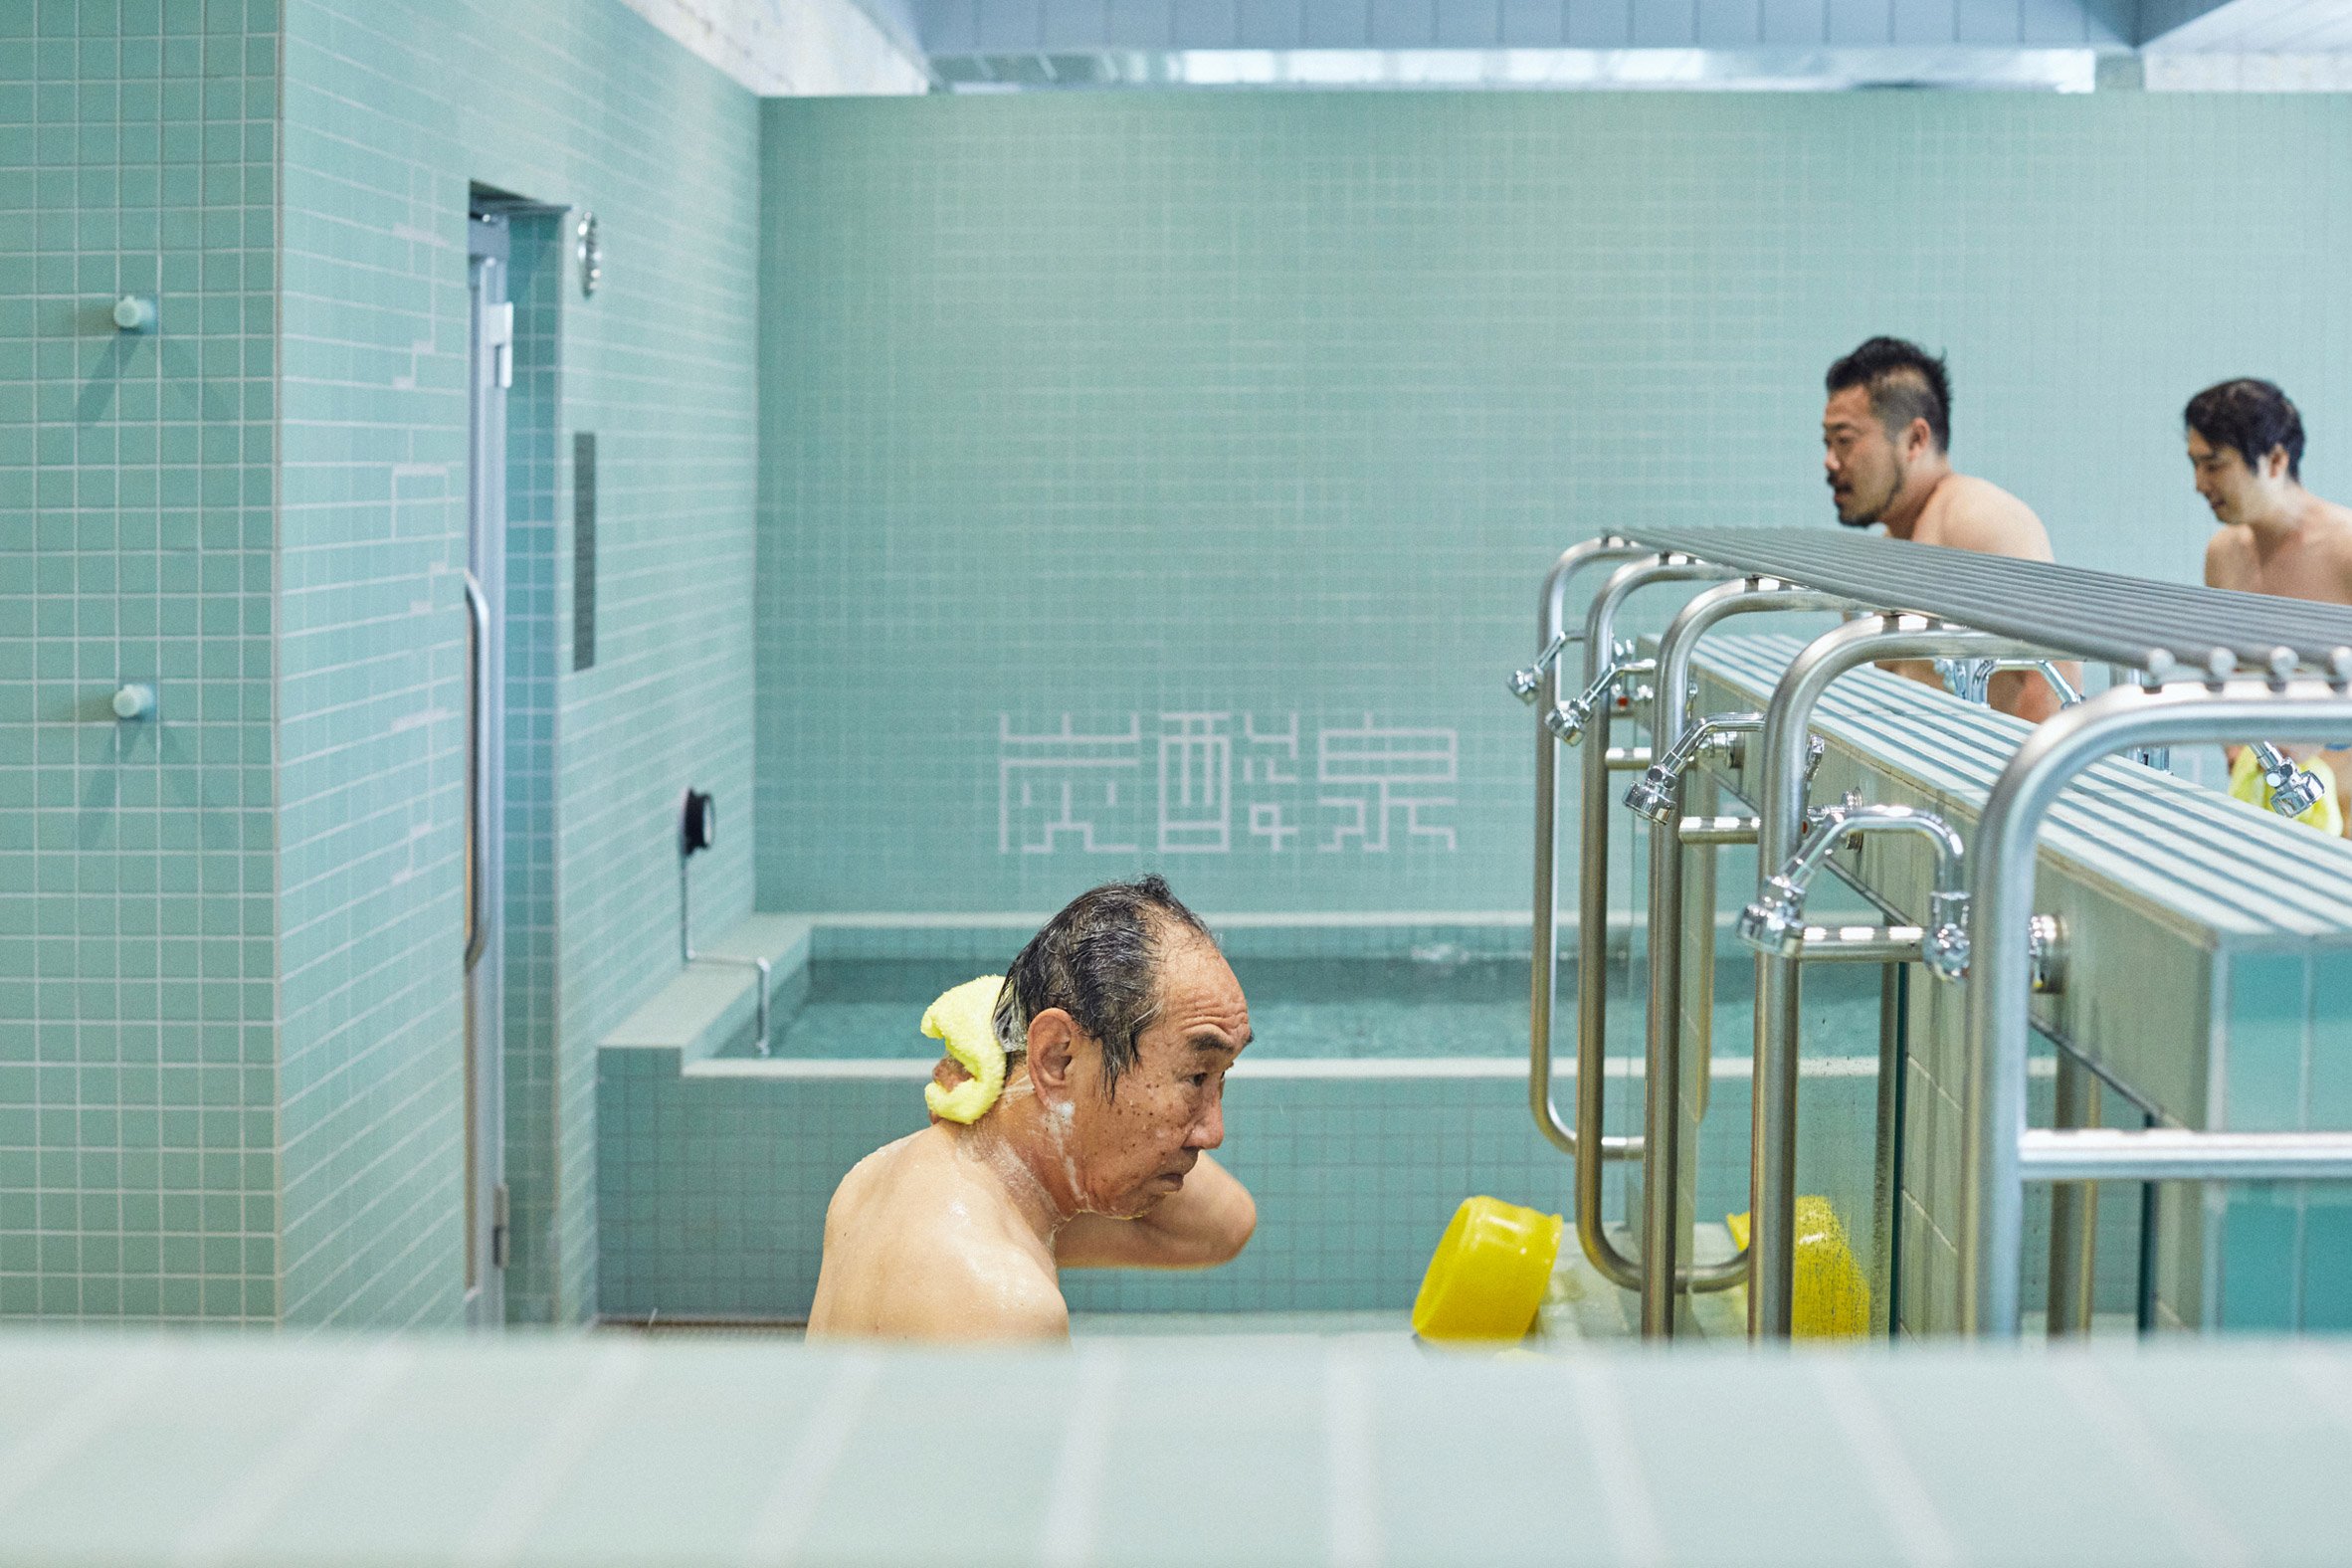 Tiles in Tokyo bathhouse